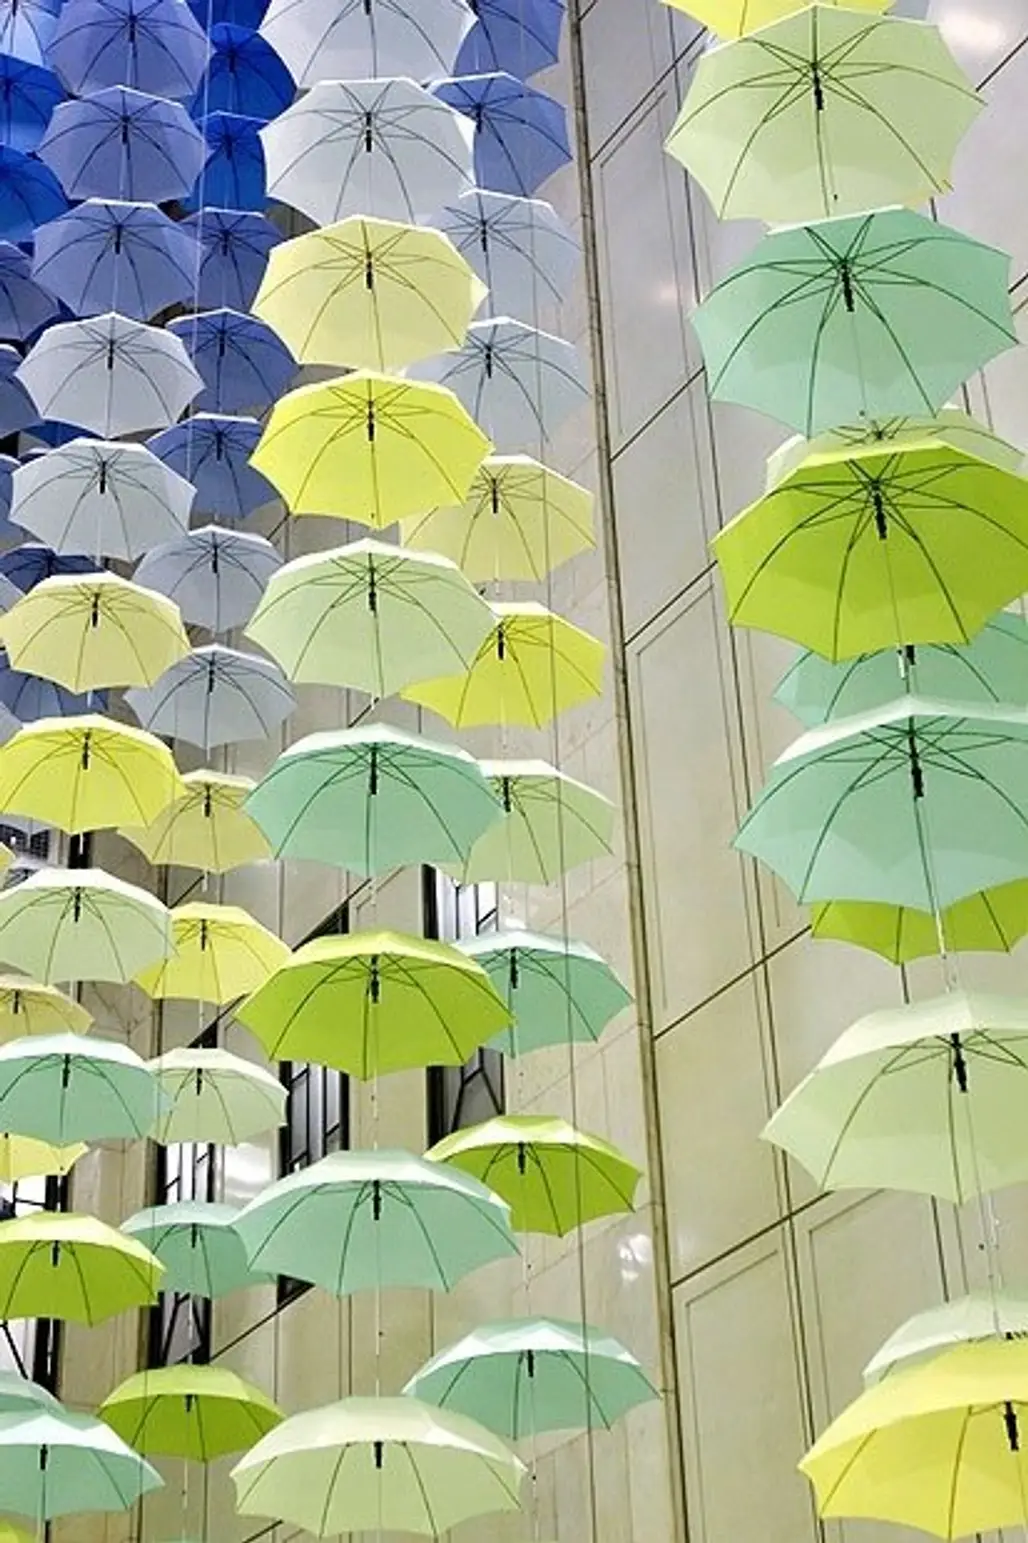 Umbrellas on Parade